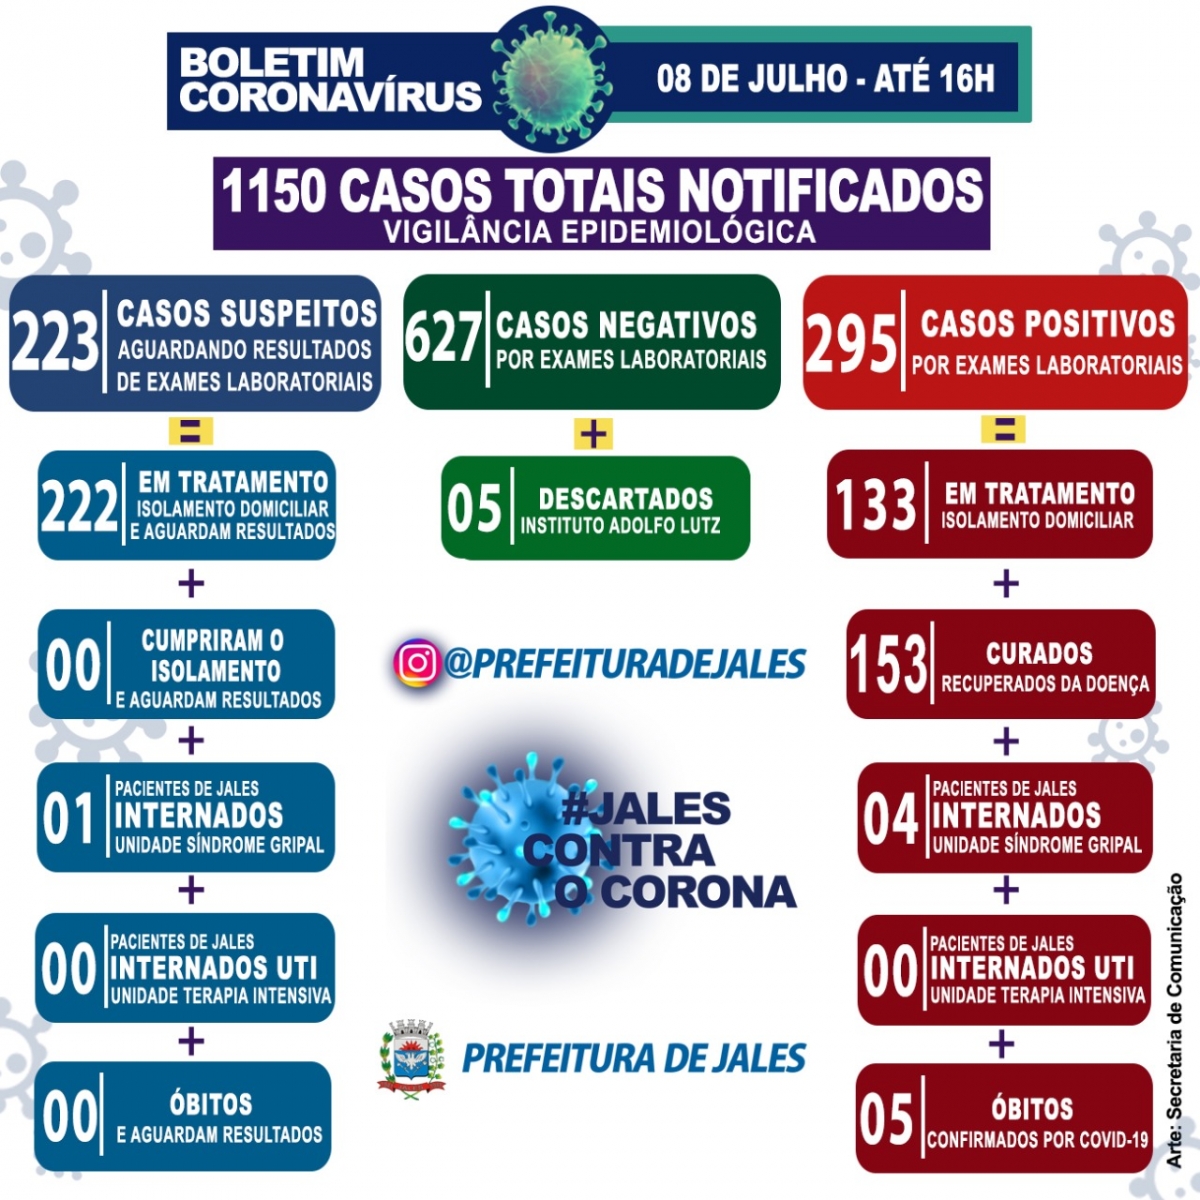 Jales - 24 horas o município registrou 58 notificações de casos suspeitos para a Covid-19 (Coronavírus).